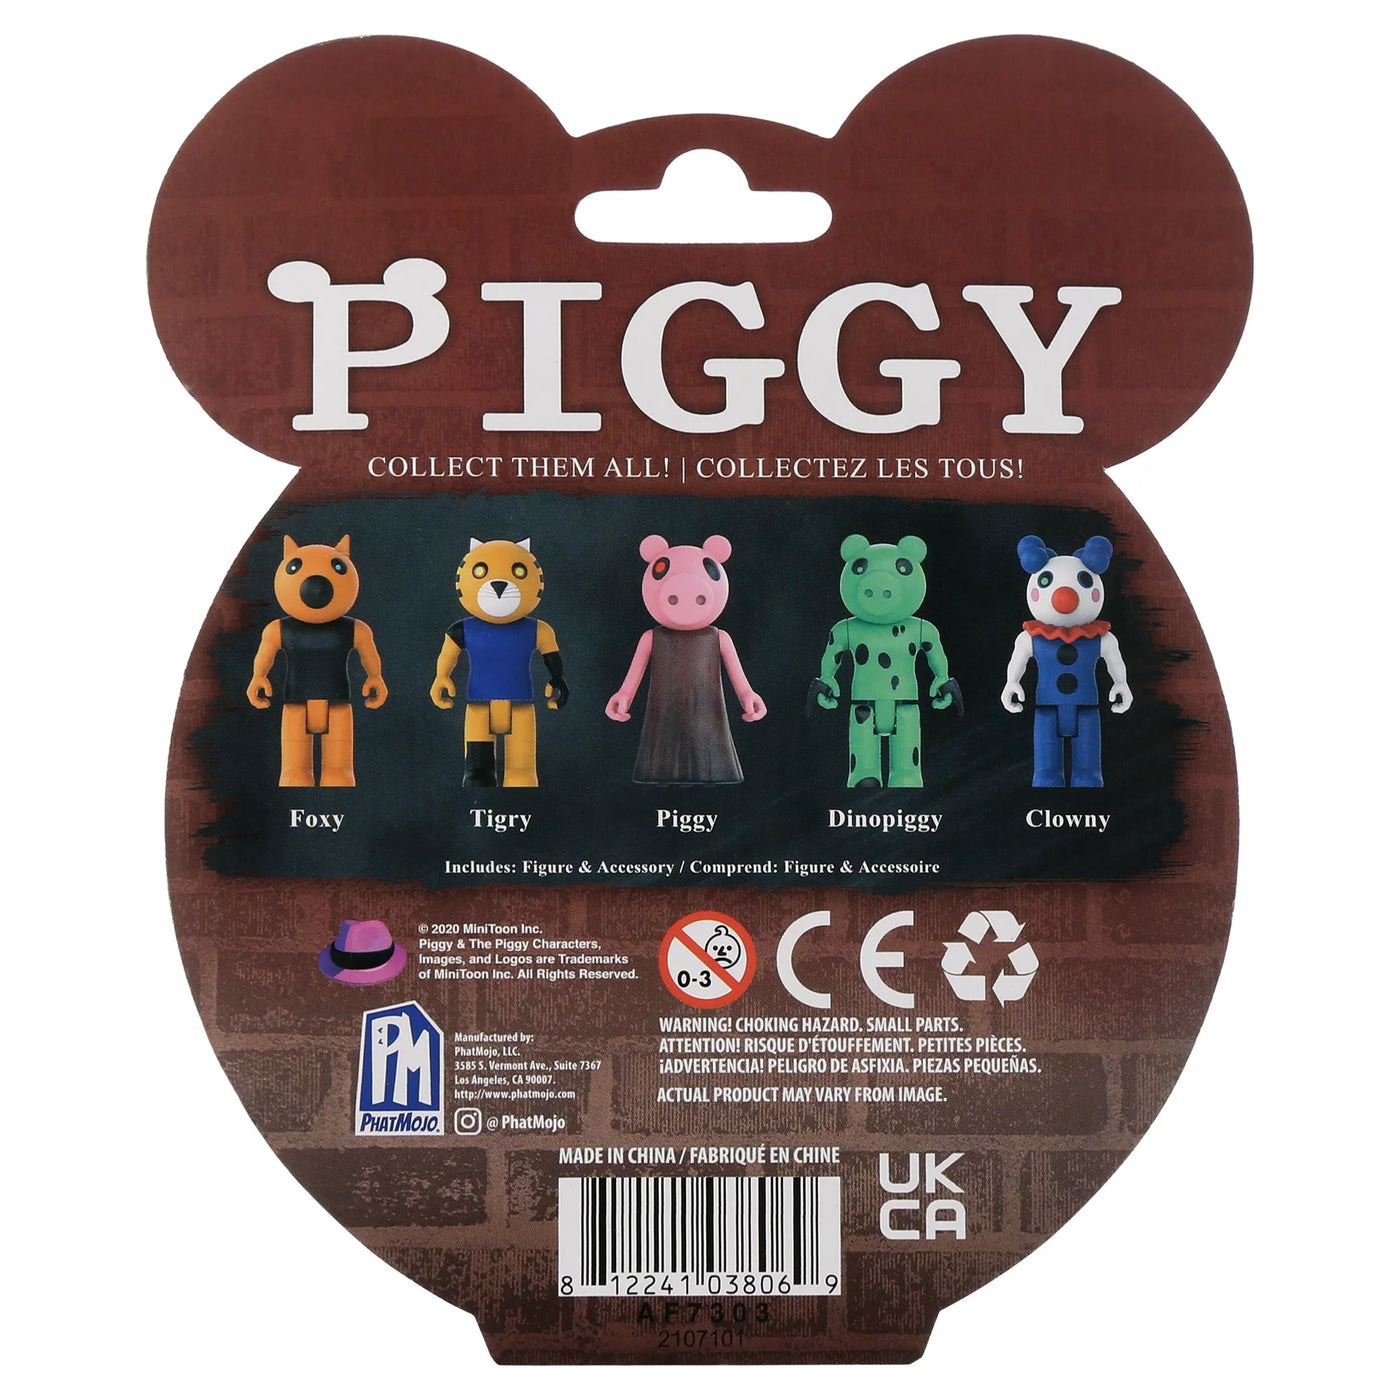 Skins do Piggy Roblox de Lego 